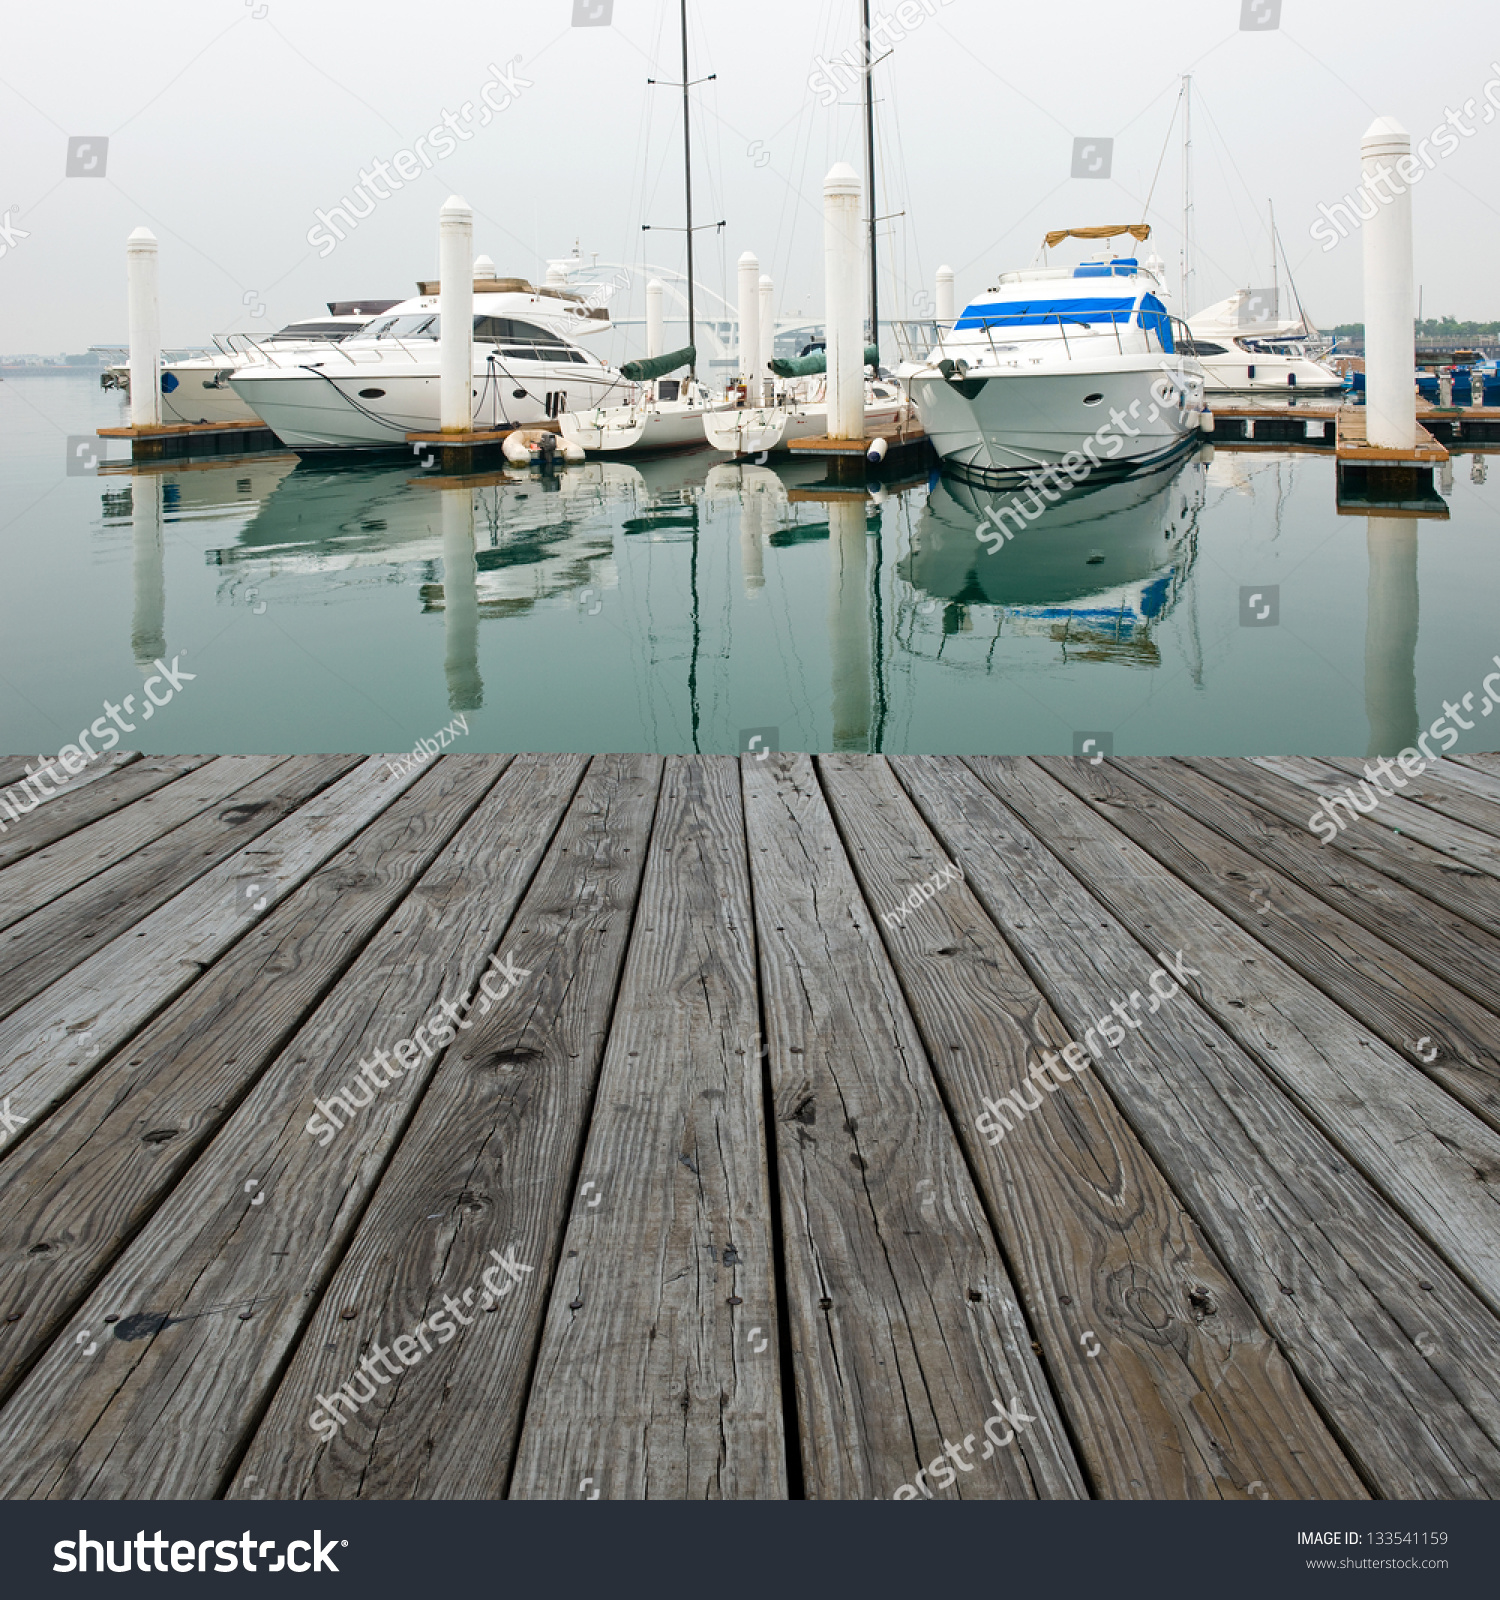 Wood platform beside yachts at marina. #133541159